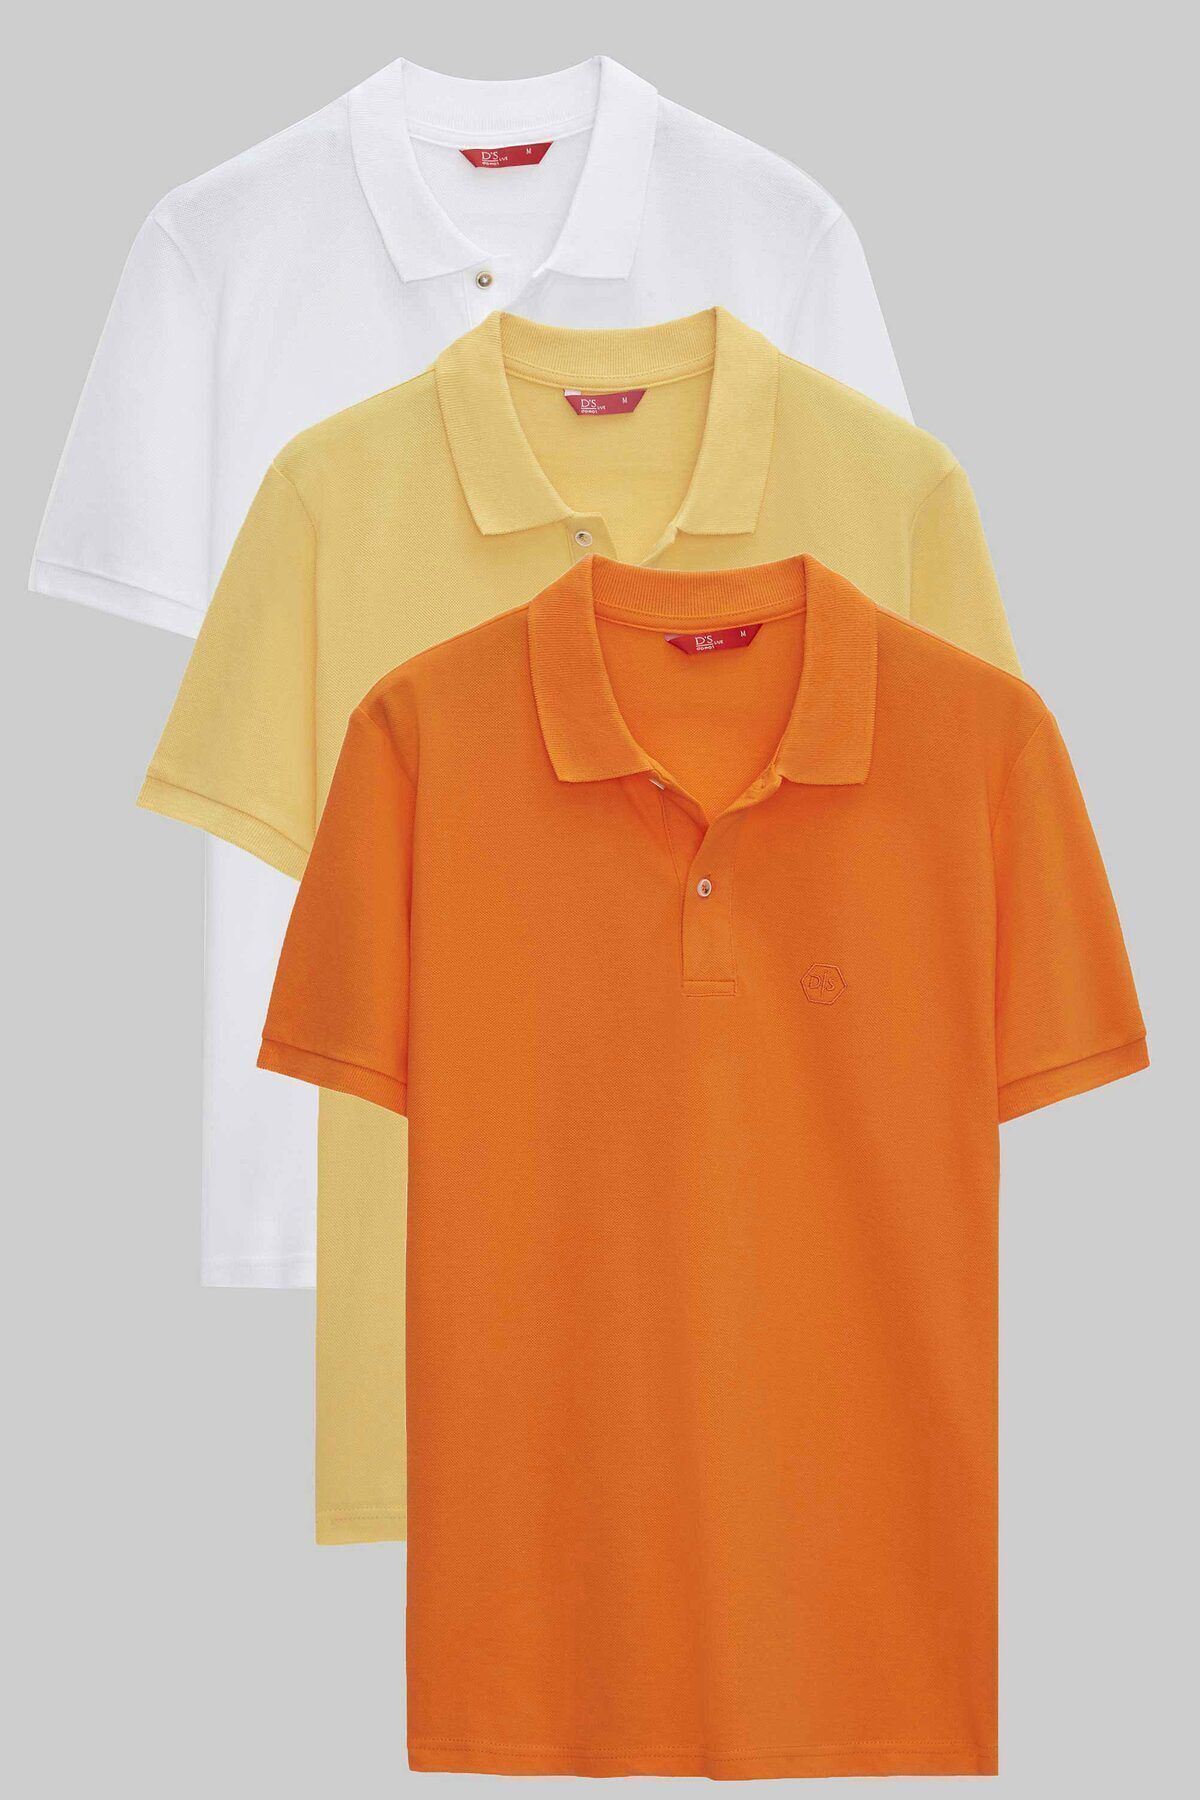 D'S Damat Regular Fit Beyaz/açık Sari/turuncu Pike Dokulu %100 Pamuk Polo Yaka T-shirt